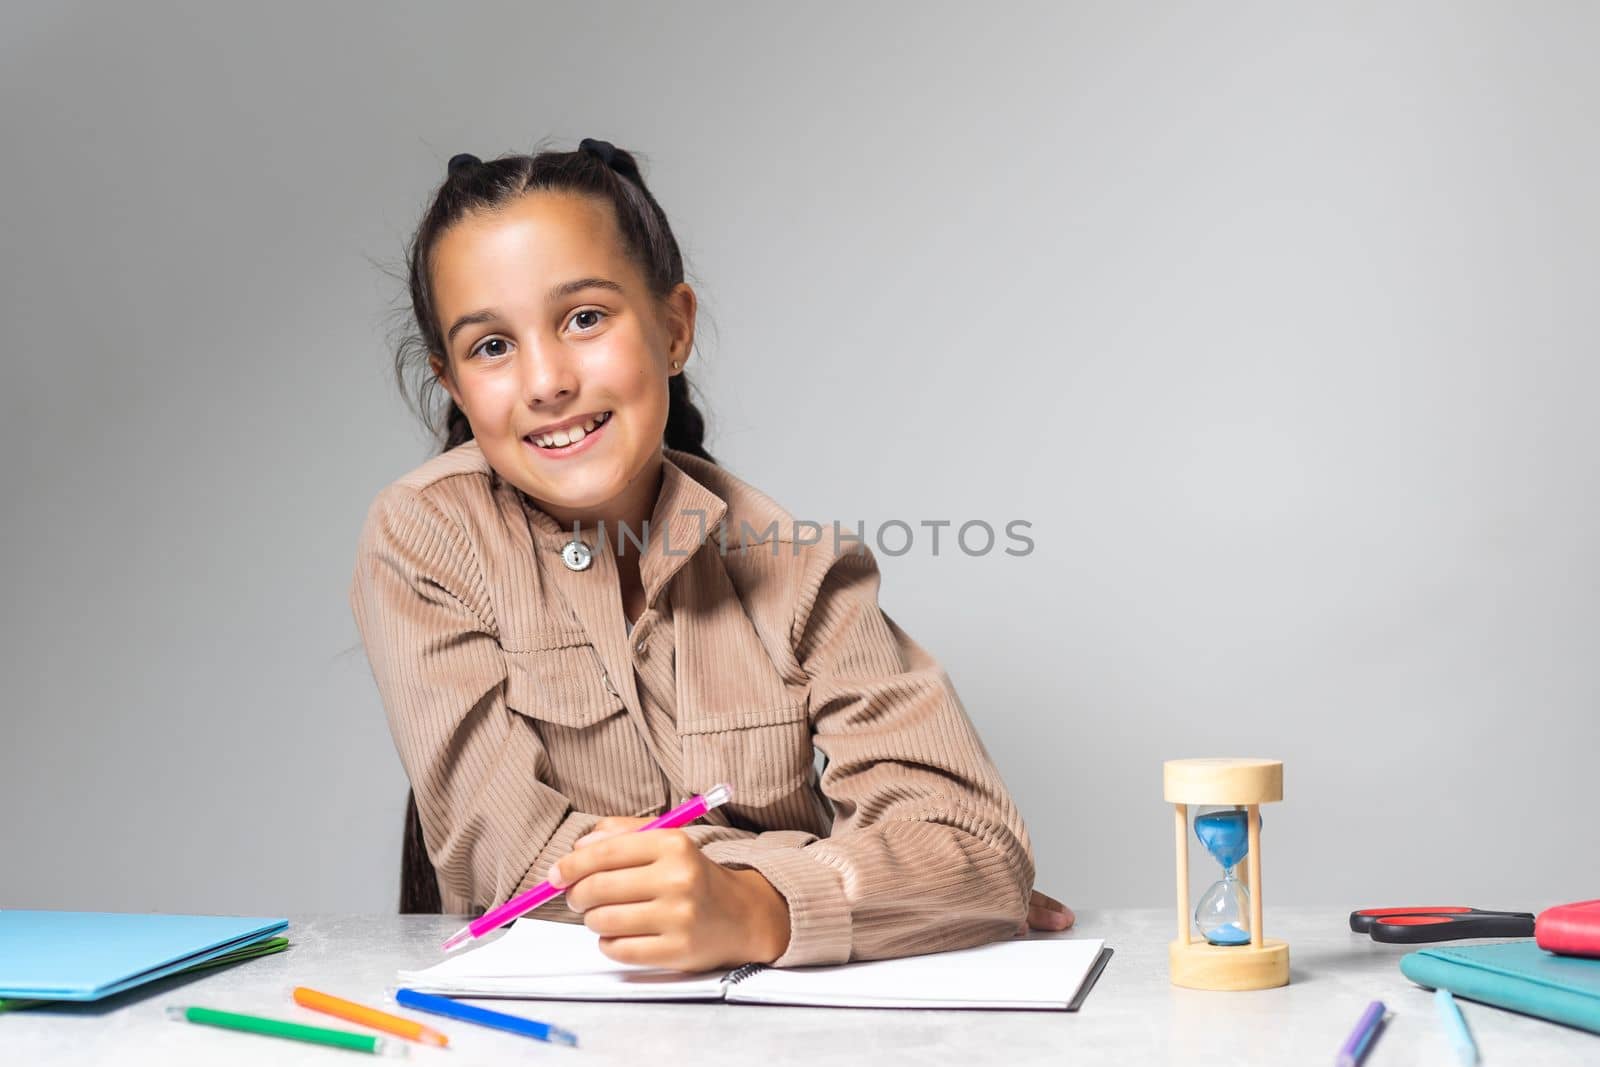 Little Girl doing homework on desk by Andelov13